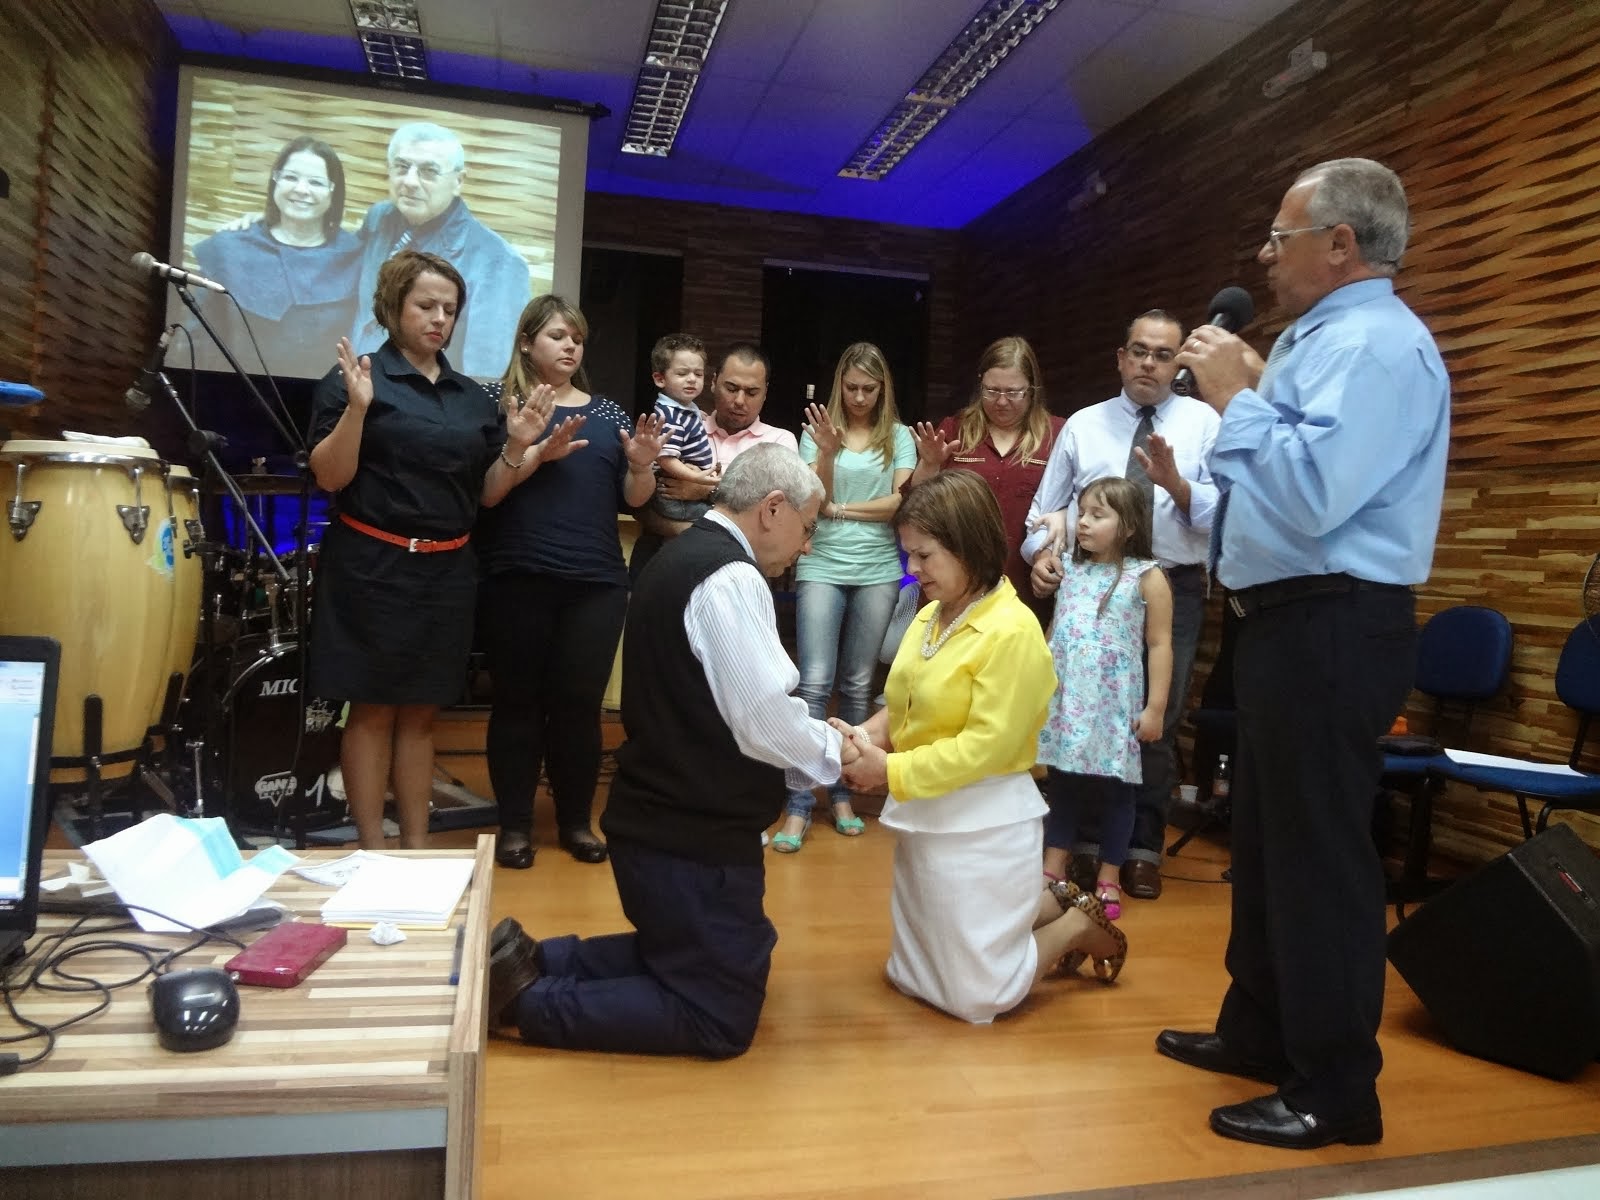 ANIVERSÁRIO CASAMENTO - Pr. Abilio e Pra. Vera e toda a família orando: 40 anos de casados